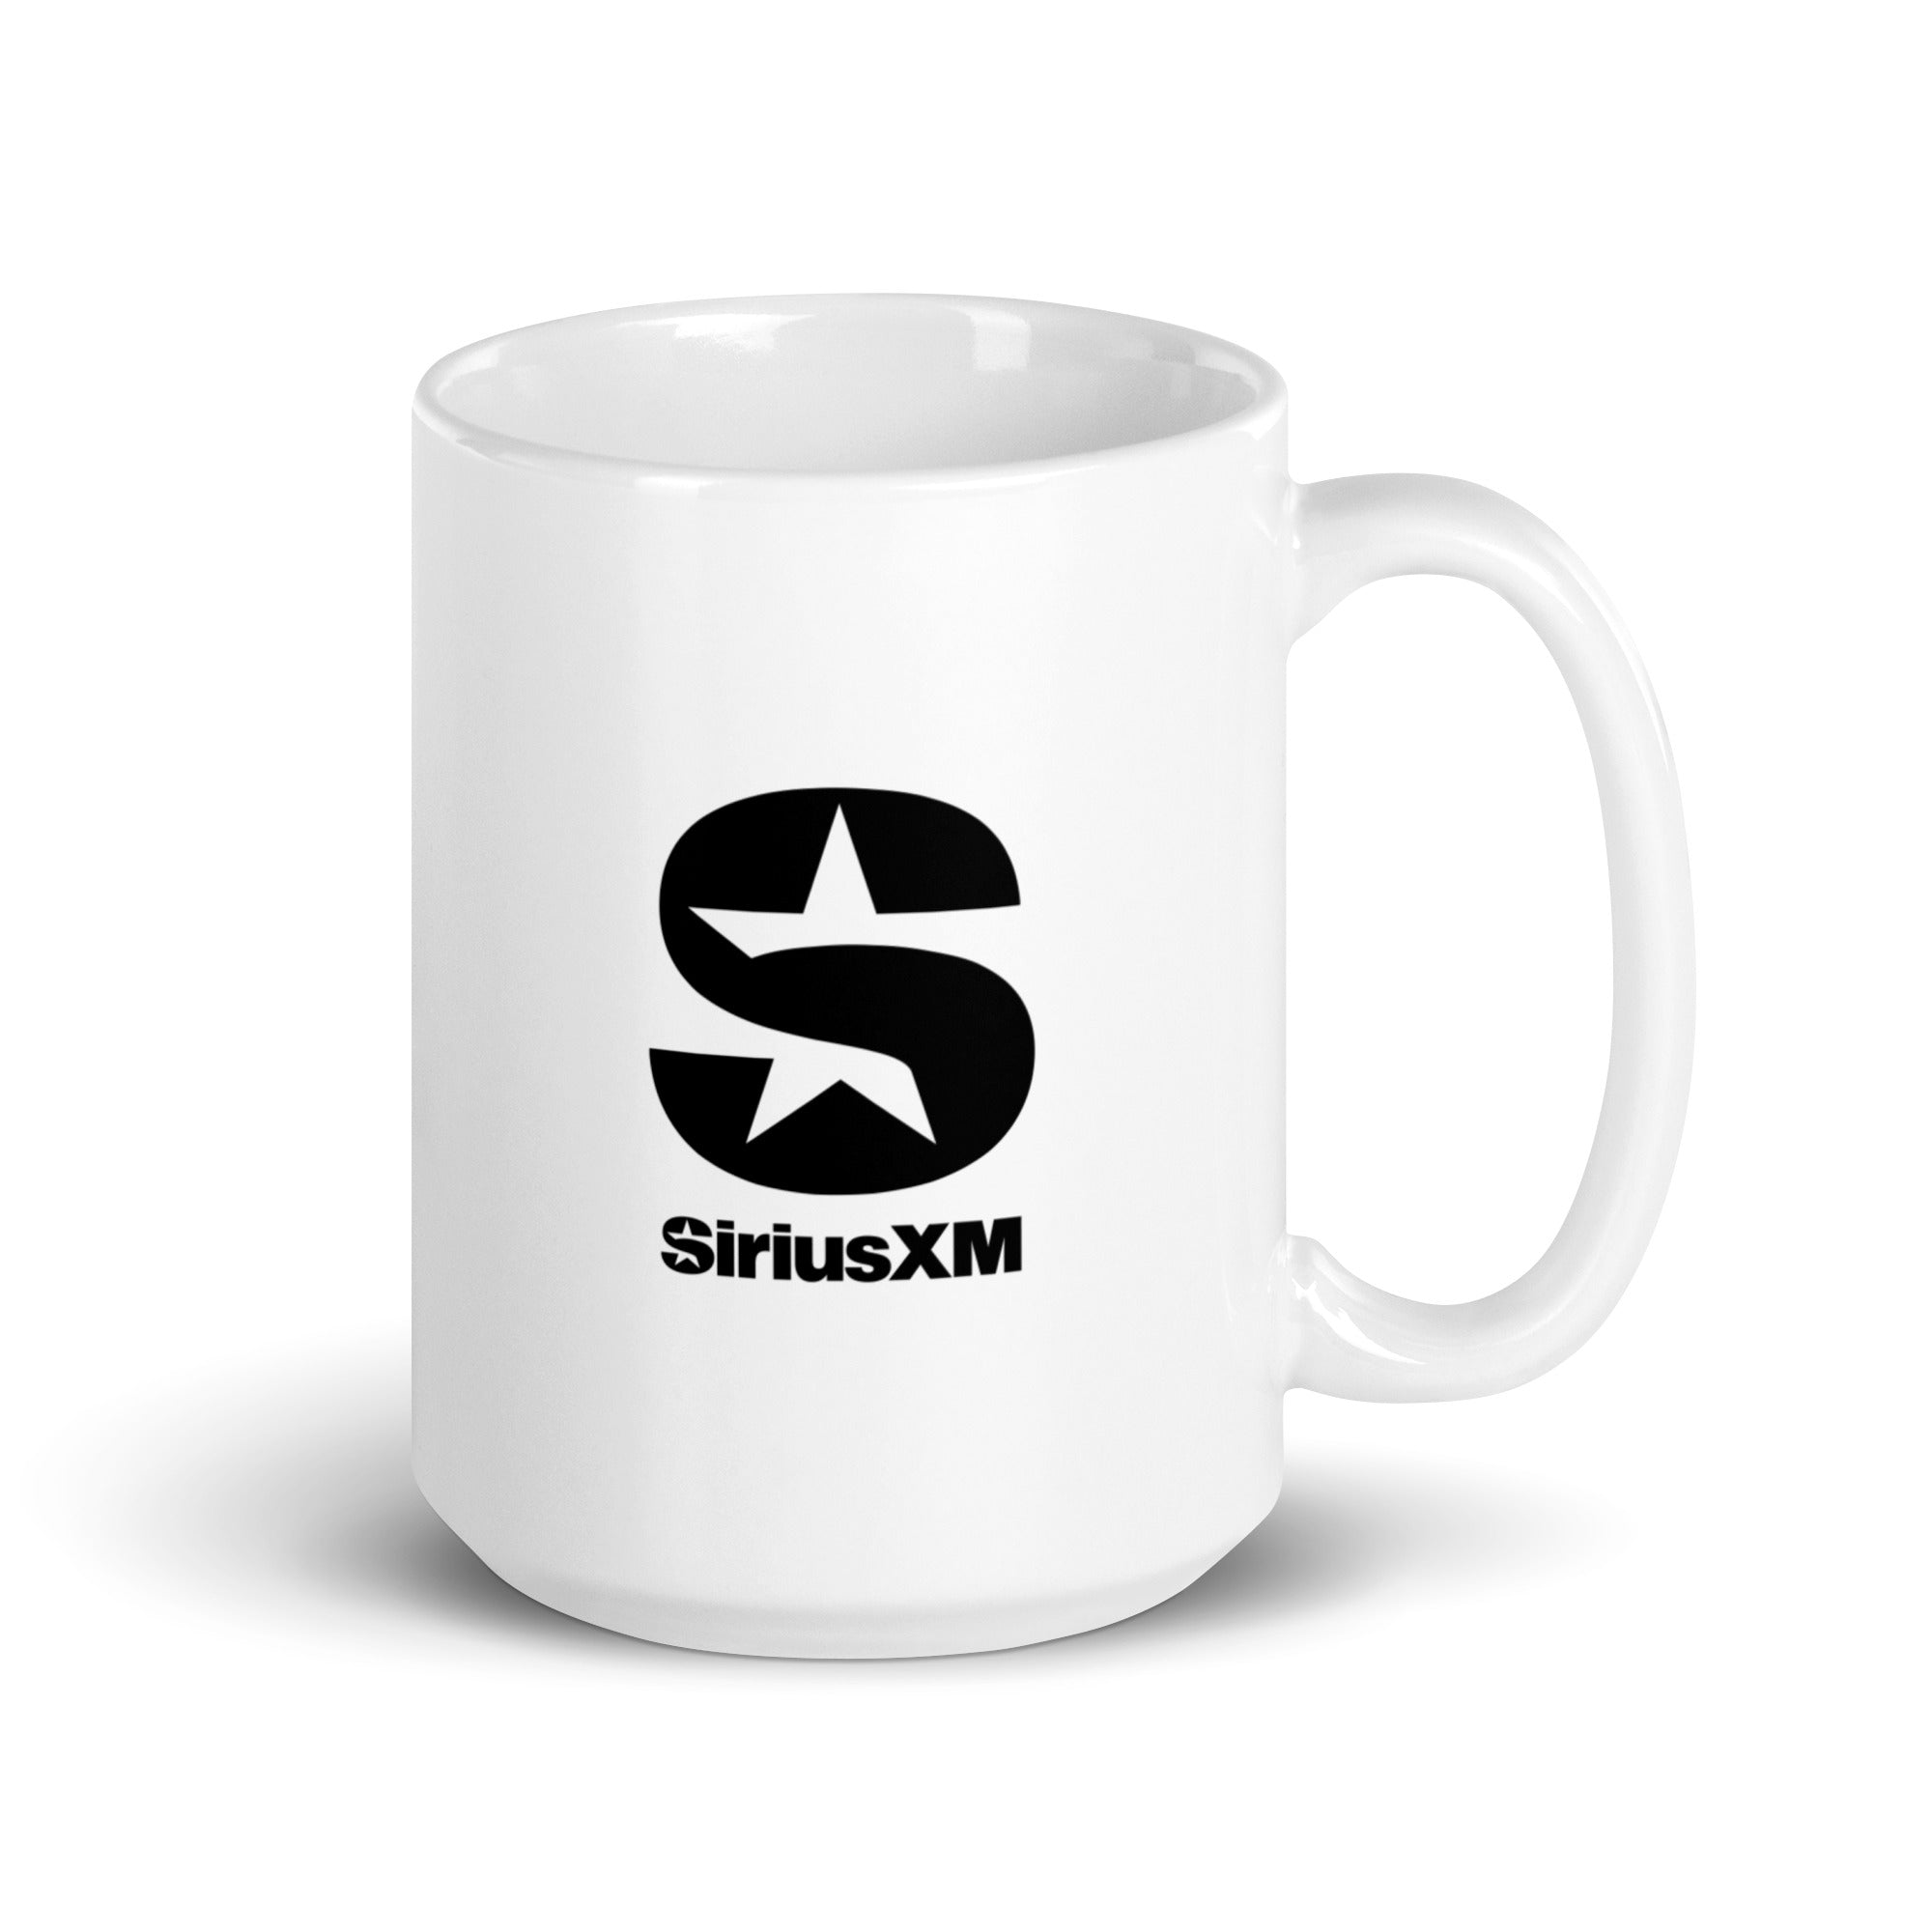 SiriusXM Silk: Mug